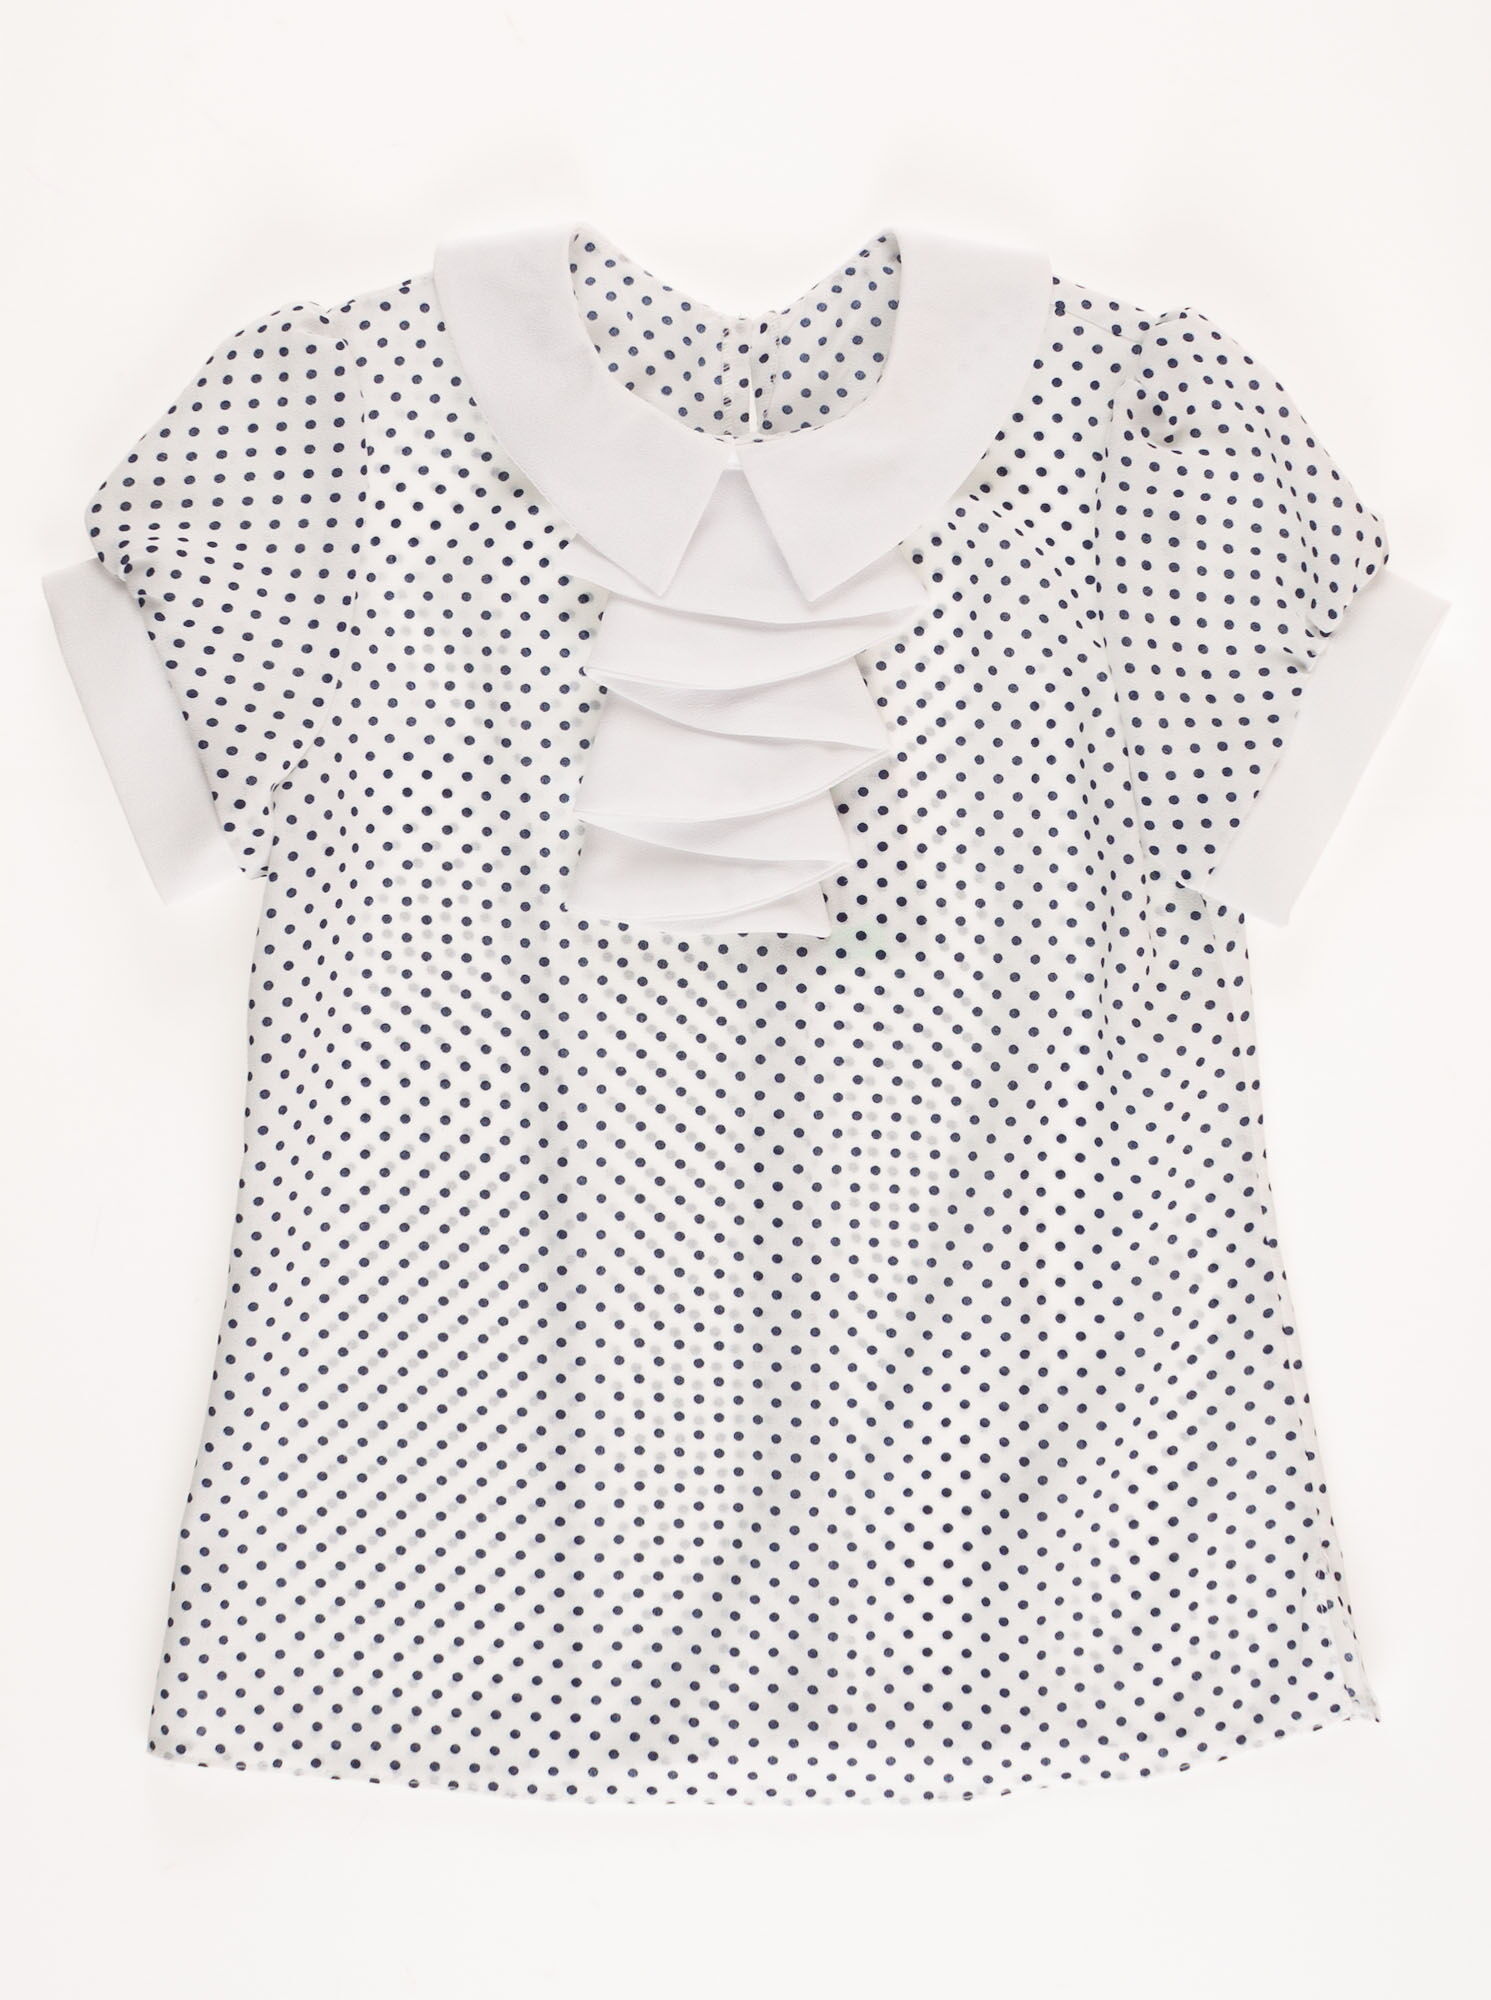 Блузка с коротким рукавом для девочки Польша Горох белая 03914 - цена